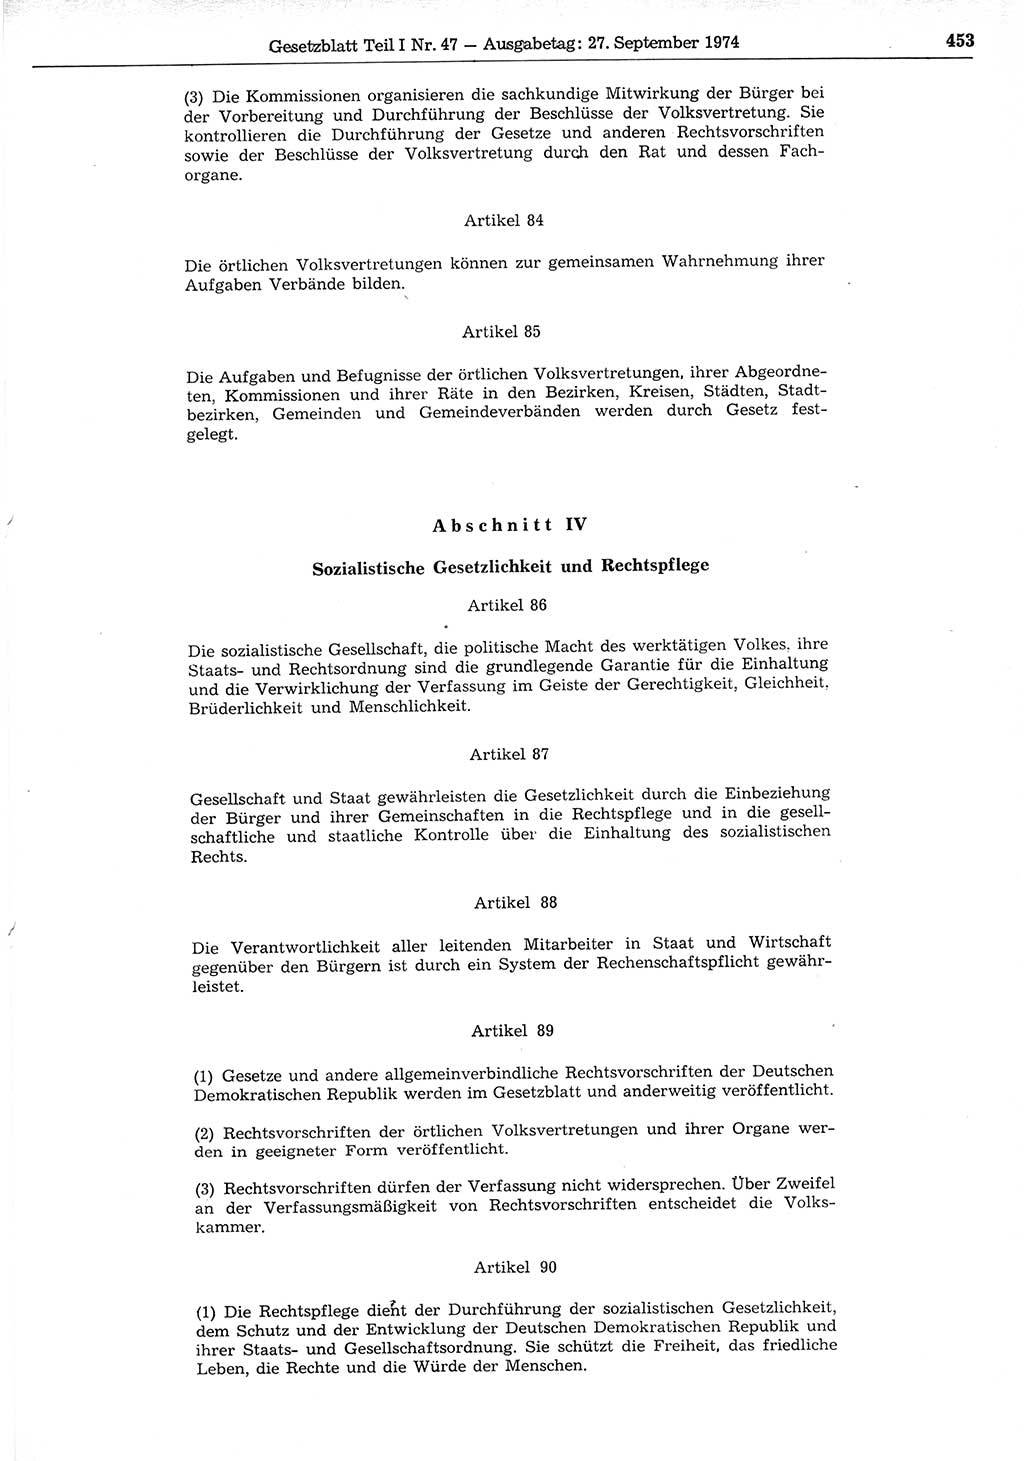 Gesetzblatt (GBl.) der Deutschen Demokratischen Republik (DDR) Teil Ⅰ 1974, Seite 453 (GBl. DDR Ⅰ 1974, S. 453)